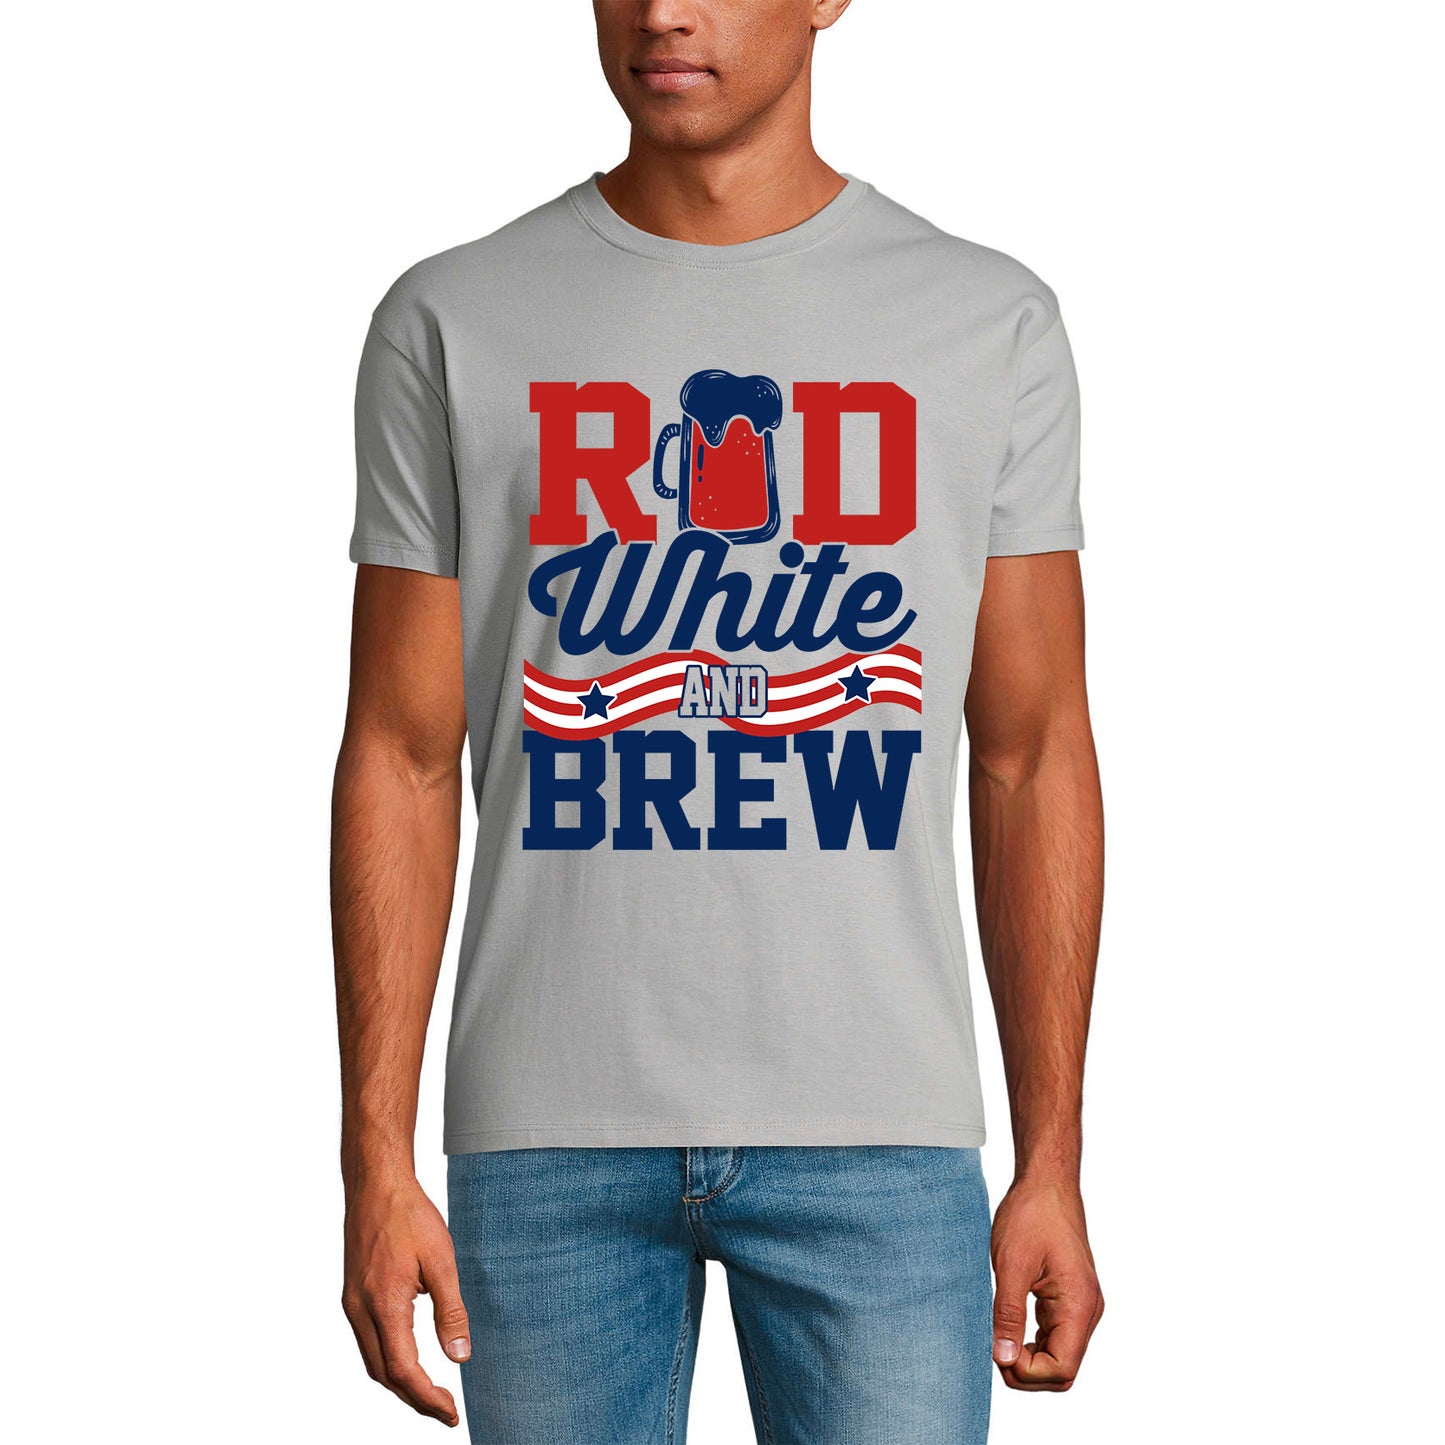 ULTRABASIC Herren-Neuheits-T-Shirt Rot Weiß und Brauen – Bierliebhaber-T-Shirt